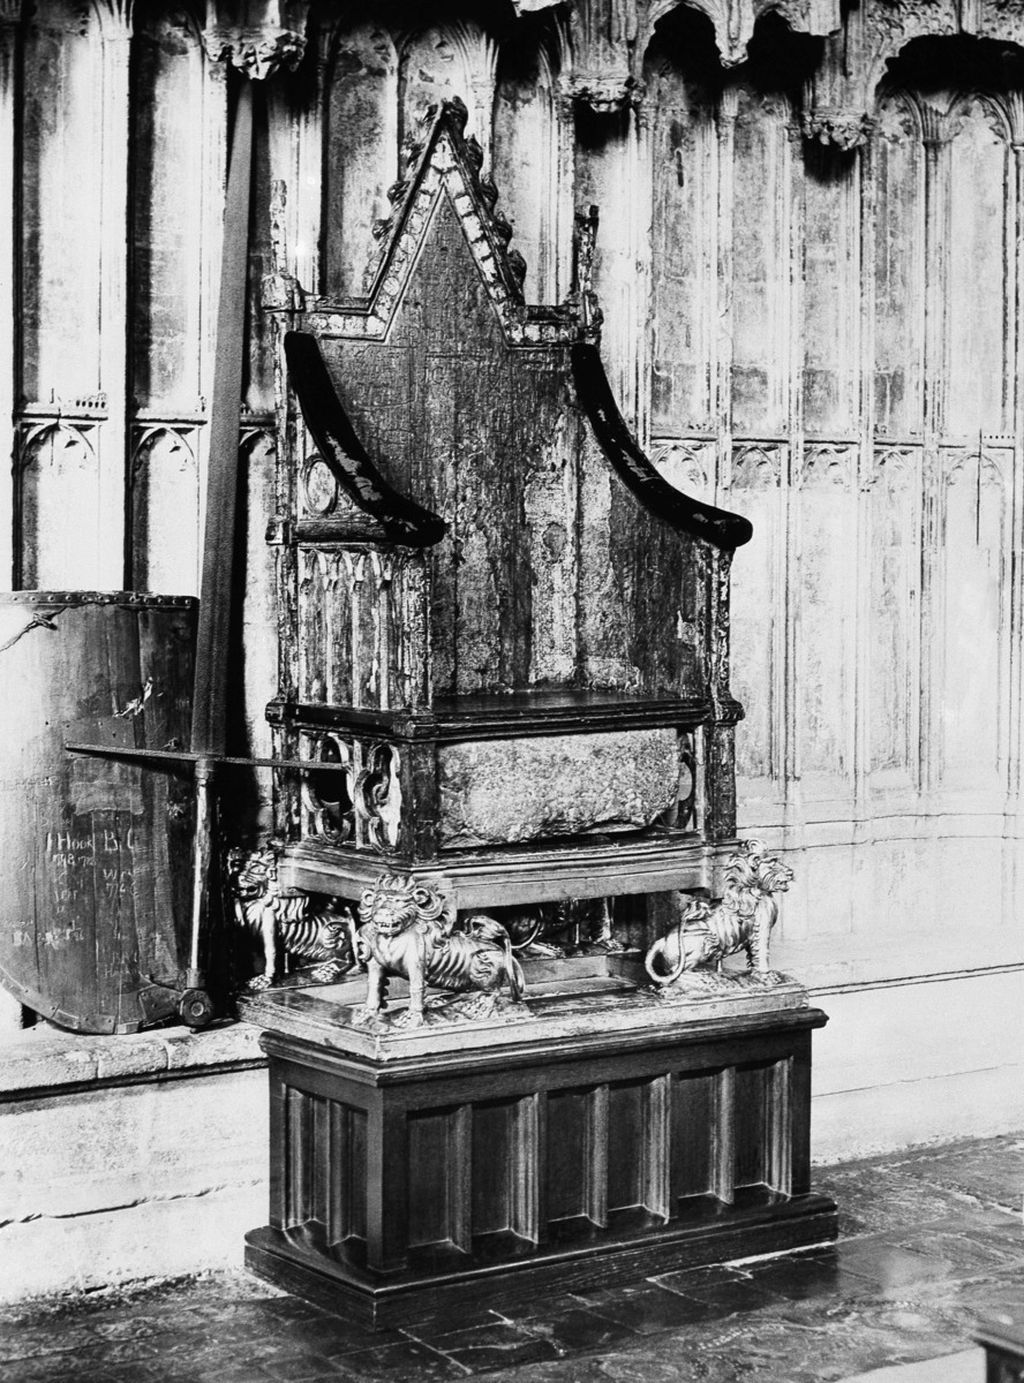 Kursi penobatan dimana Edward VIII dimahkotai ini disimpan di kapel St. Edward, London, Inggris, pada 30 Oktober 1936. Batu Takdir dipasang di bawah kursi penobatan itu. 